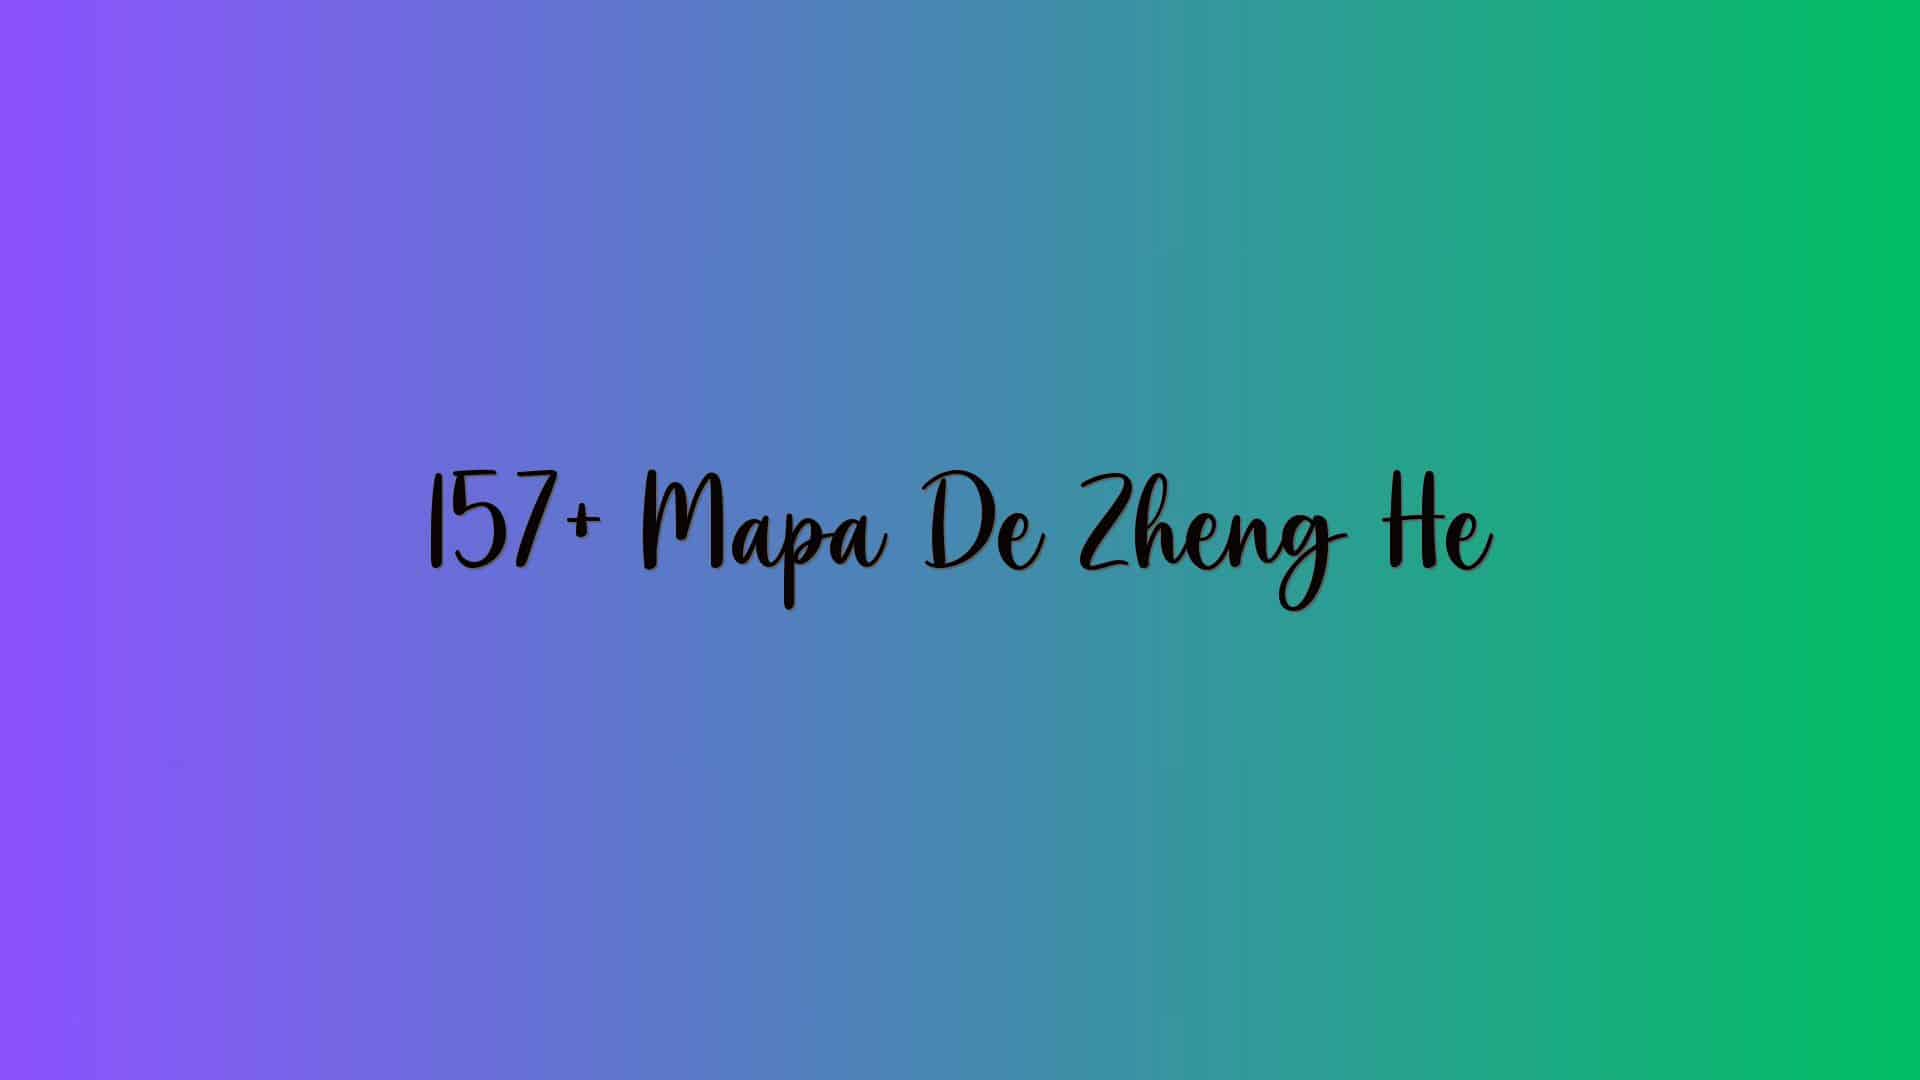 157+ Mapa De Zheng He